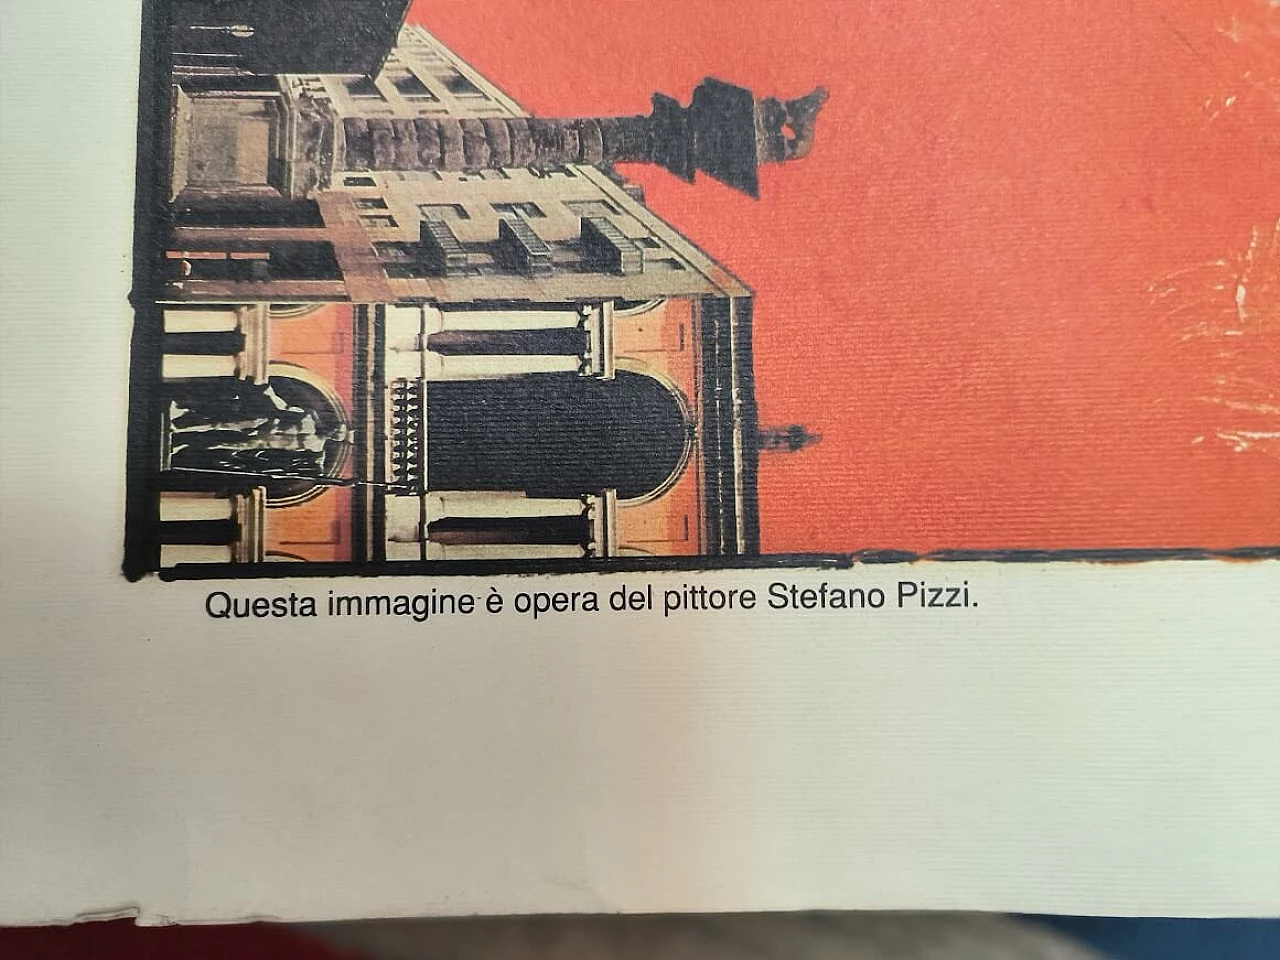 Stefano Pizzi, manifesto di promozione turistica di Milano, anni '80 2